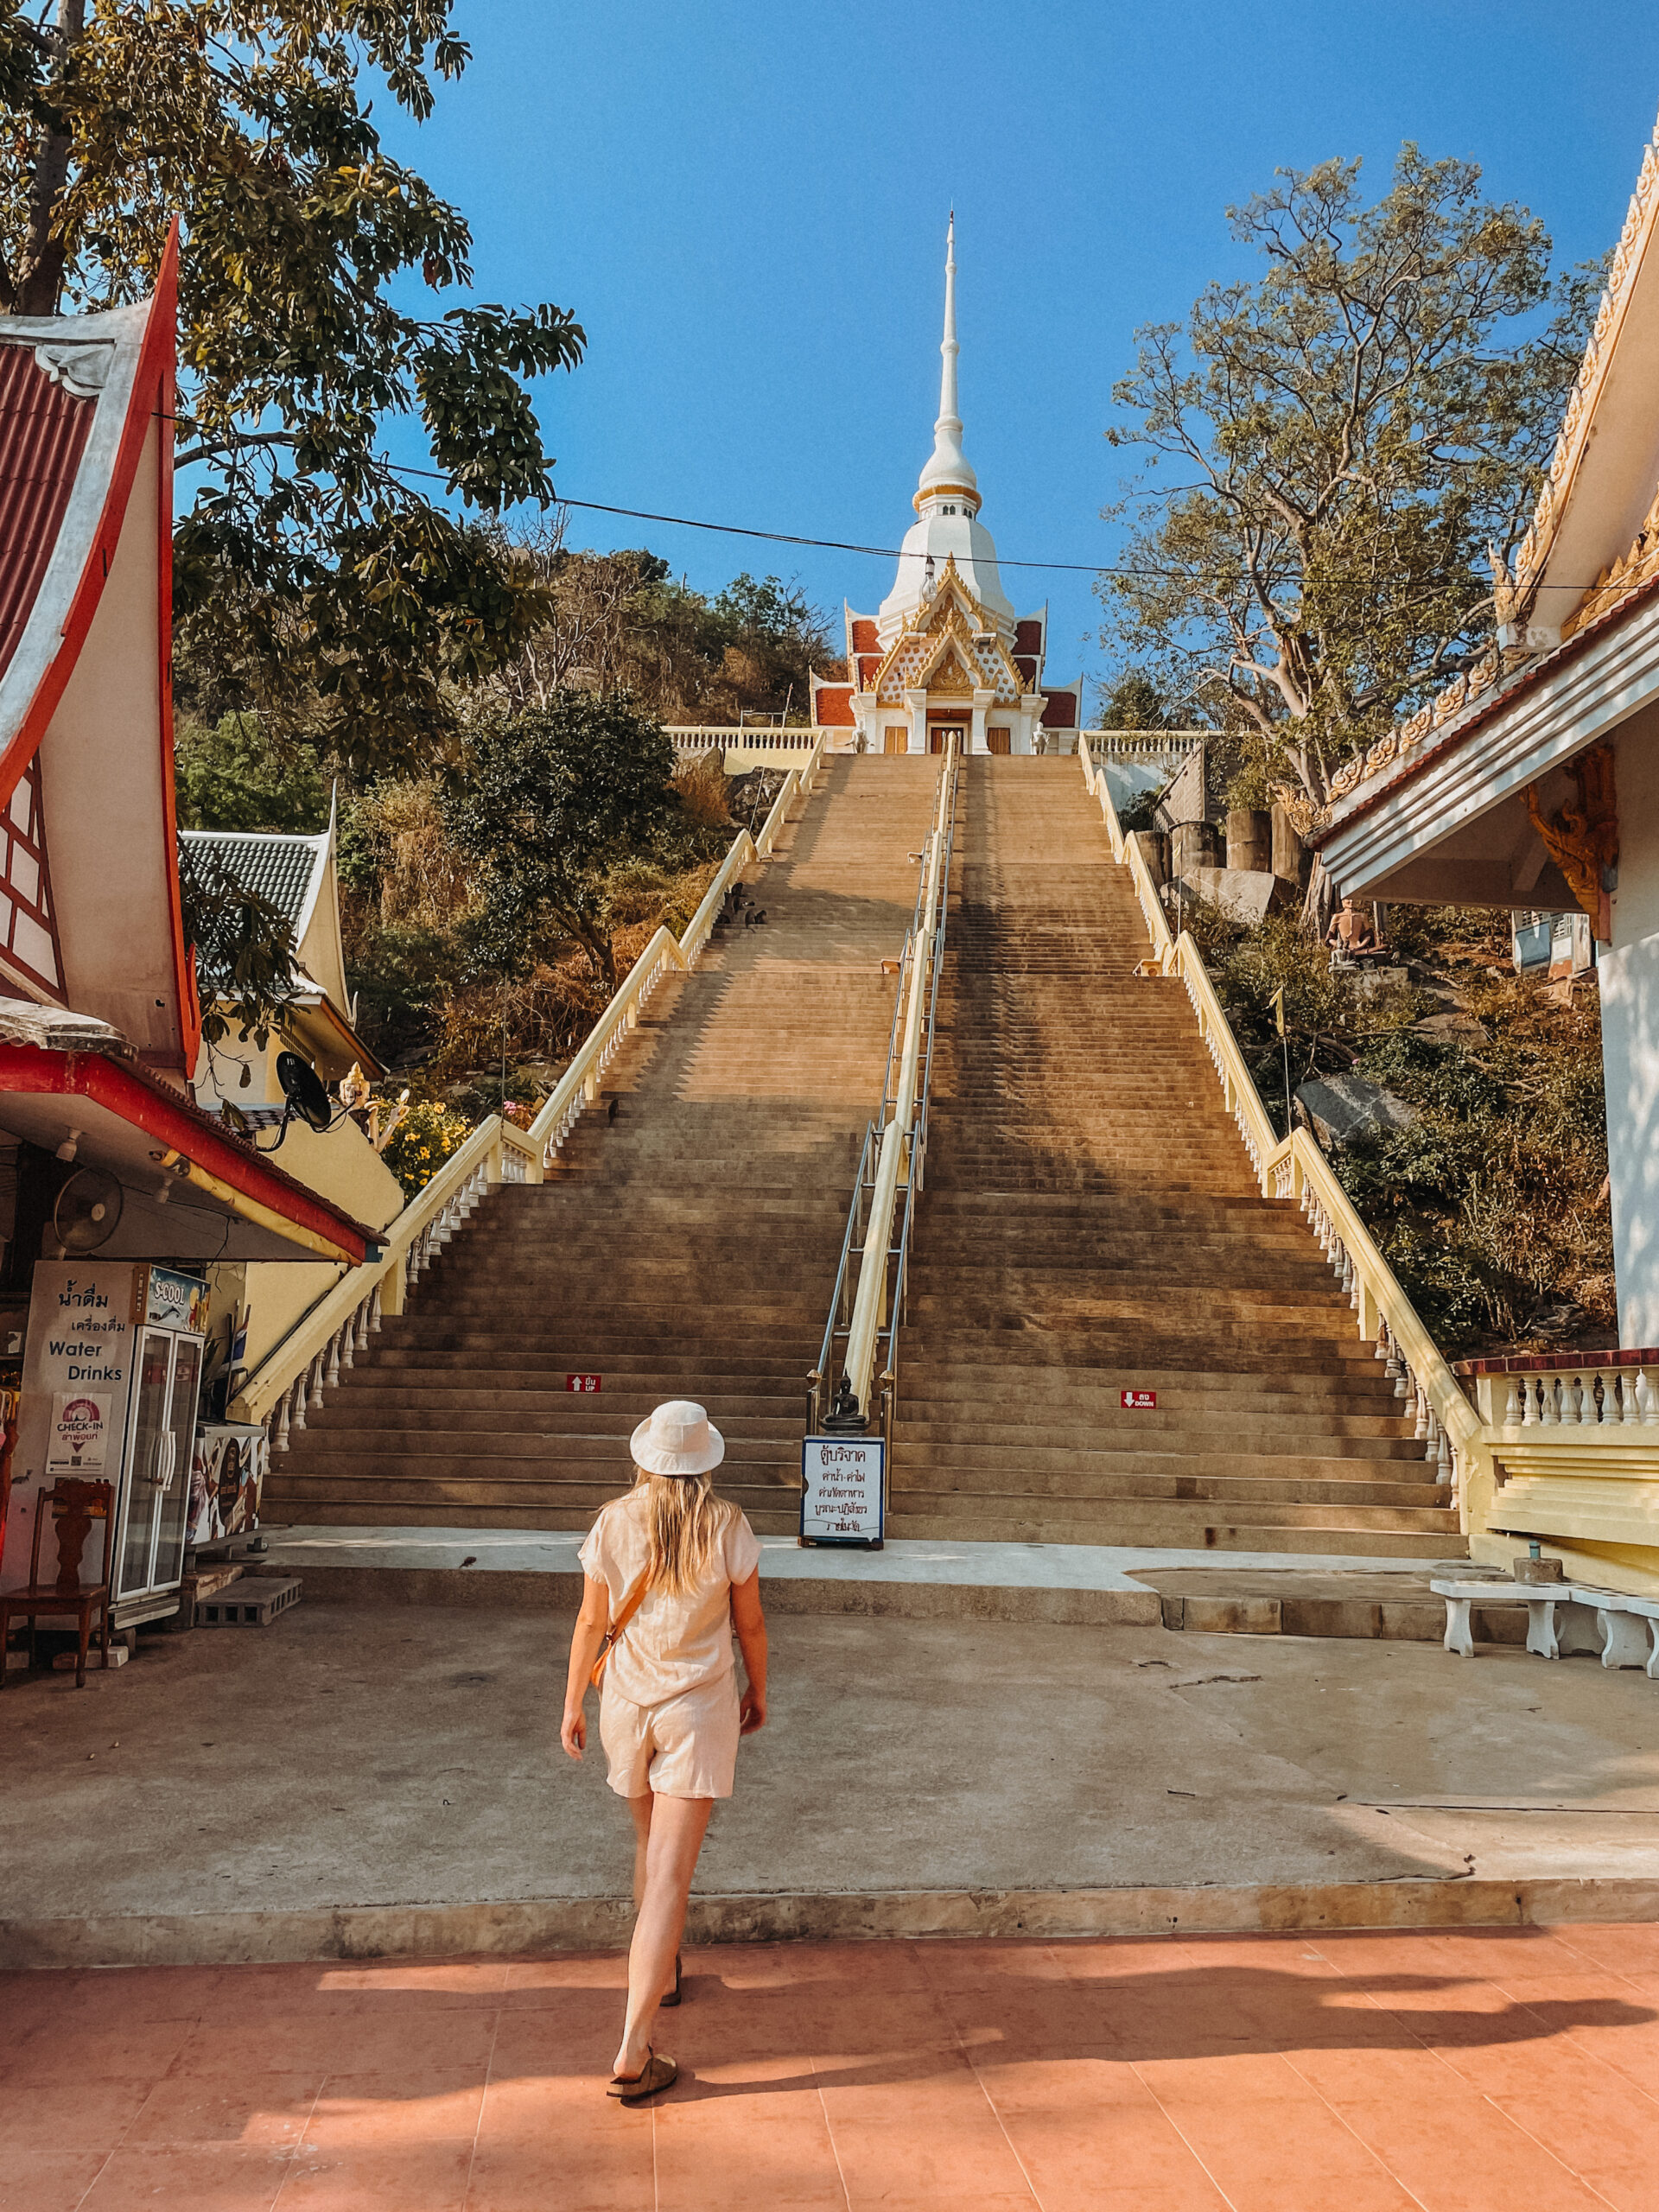 tempel hua hin - monkey temple hua hin - wat te doen hua hin - doen in hua hin - hua hin thailand